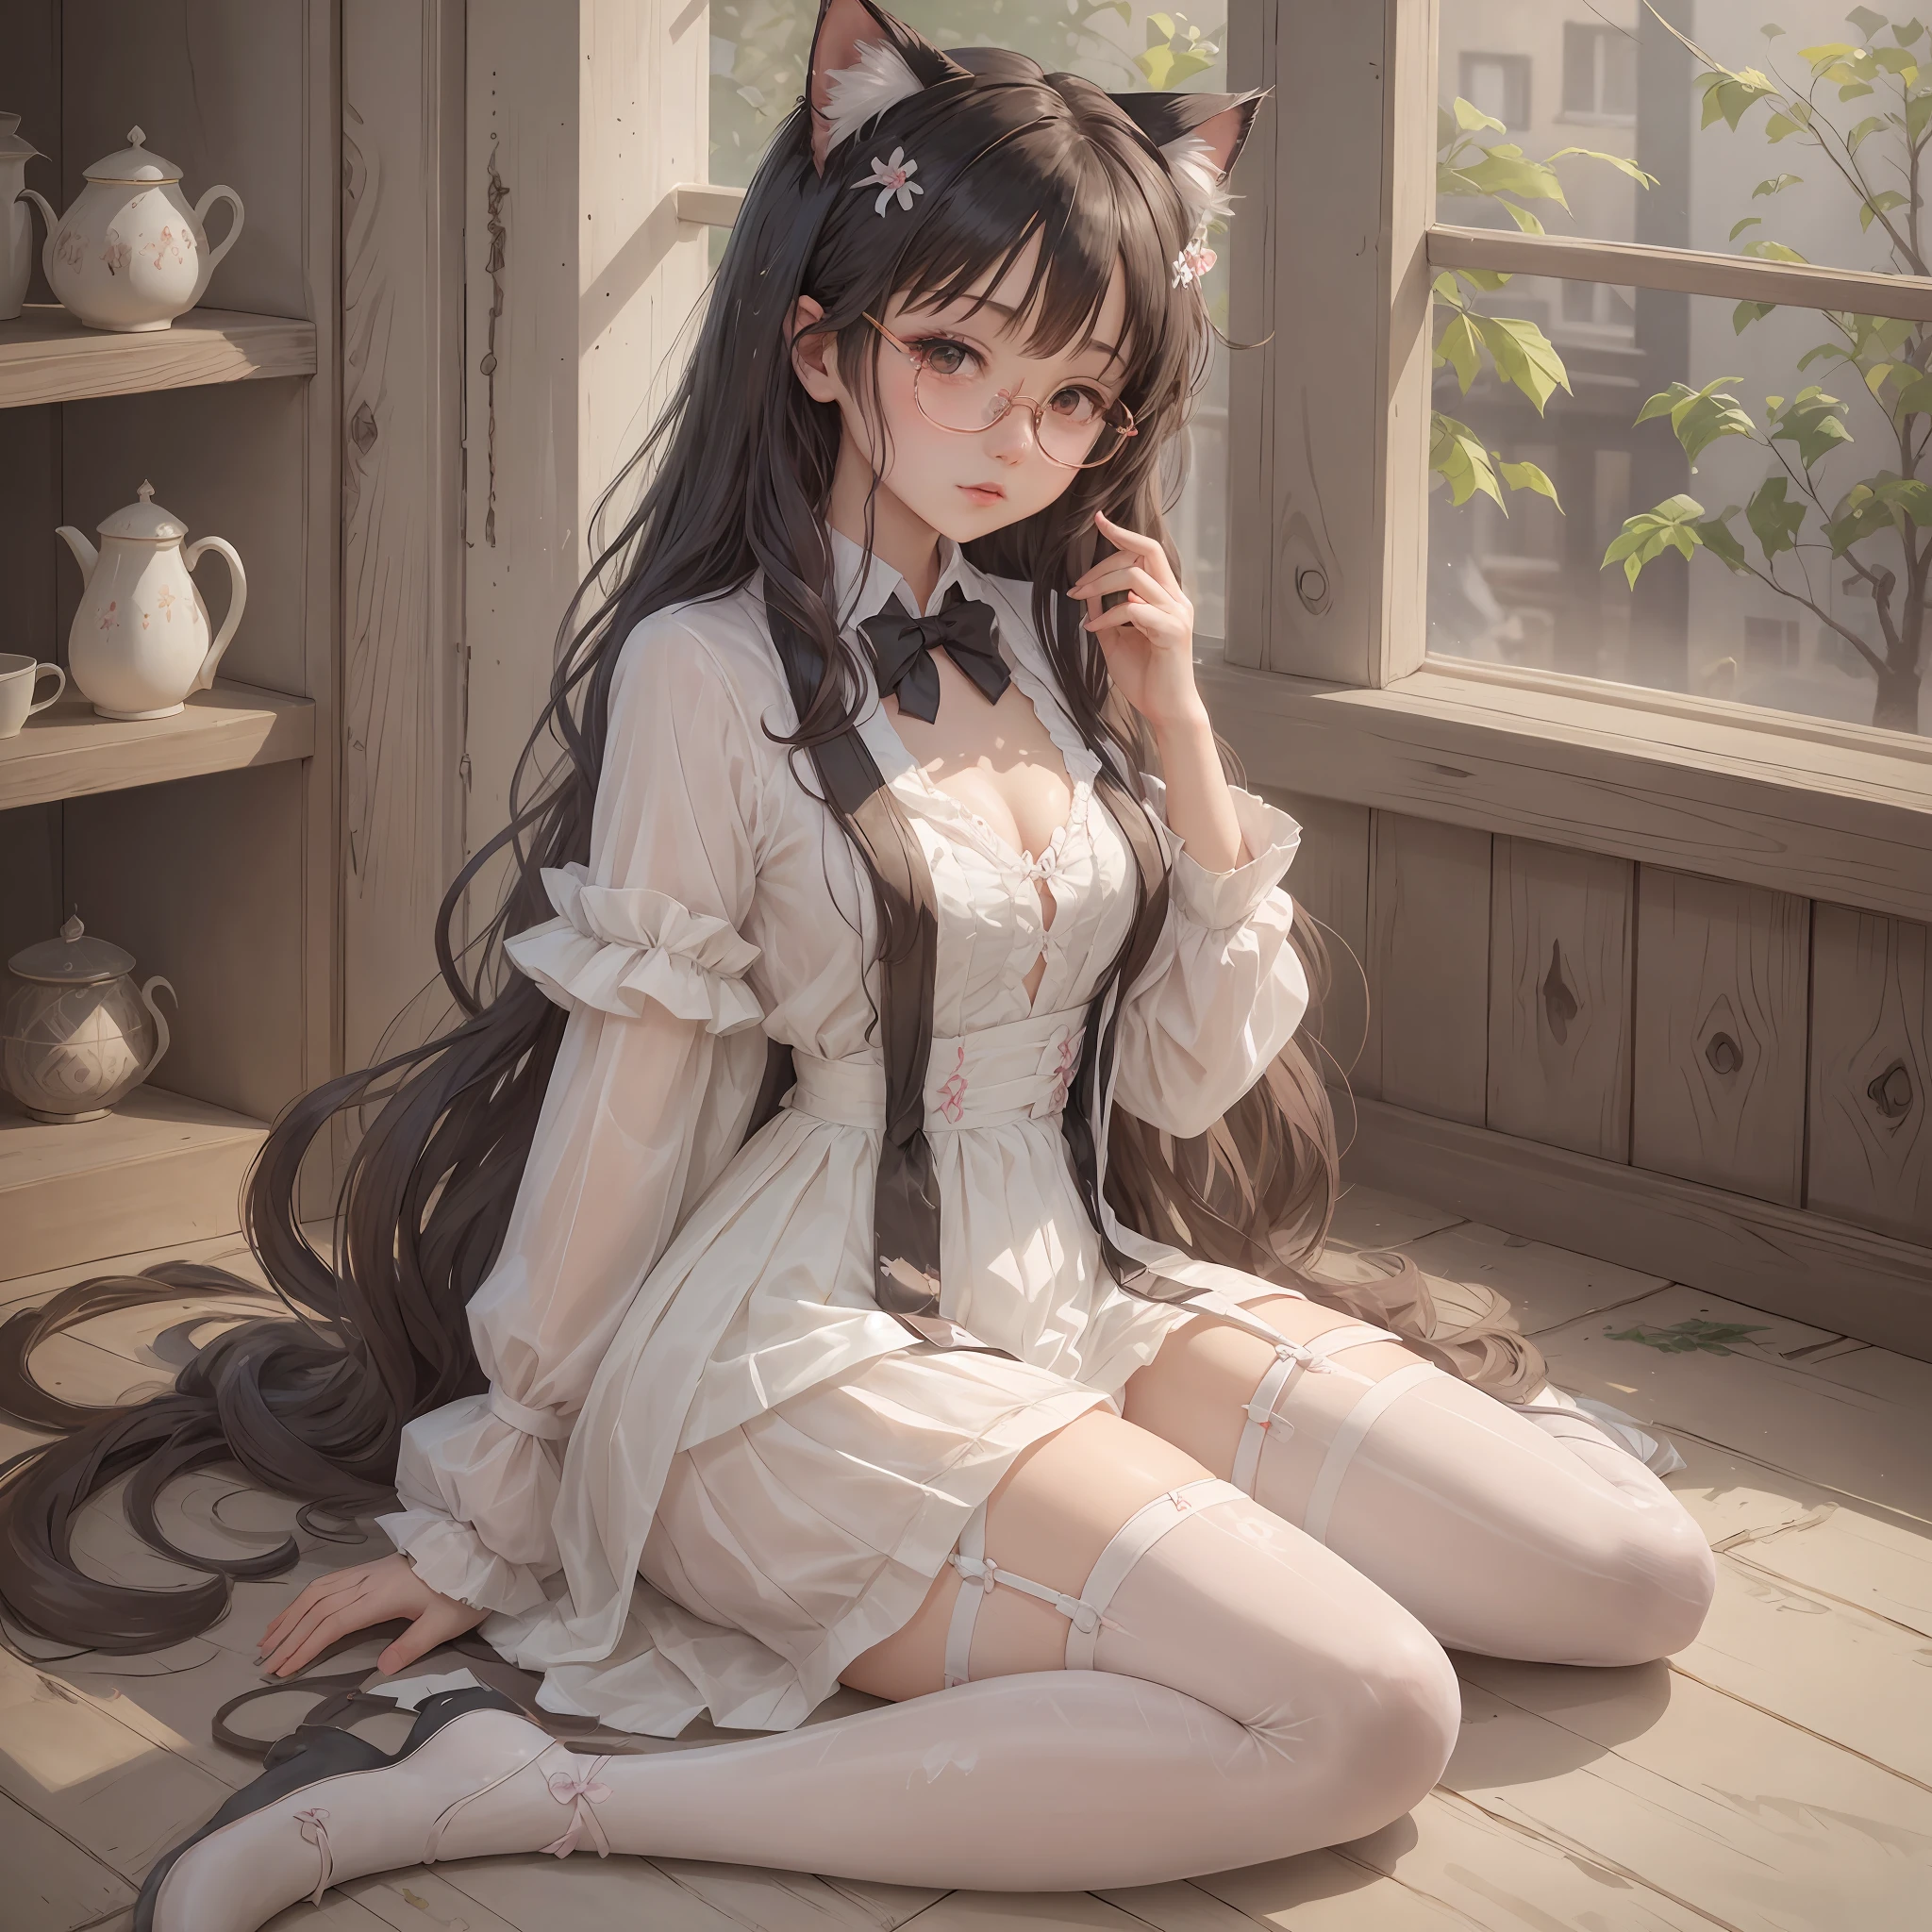 dress shoujo glasses long hair full body white suspender stockings cat ears seductive anime girl exposed chest sitting open legs --auto --s2